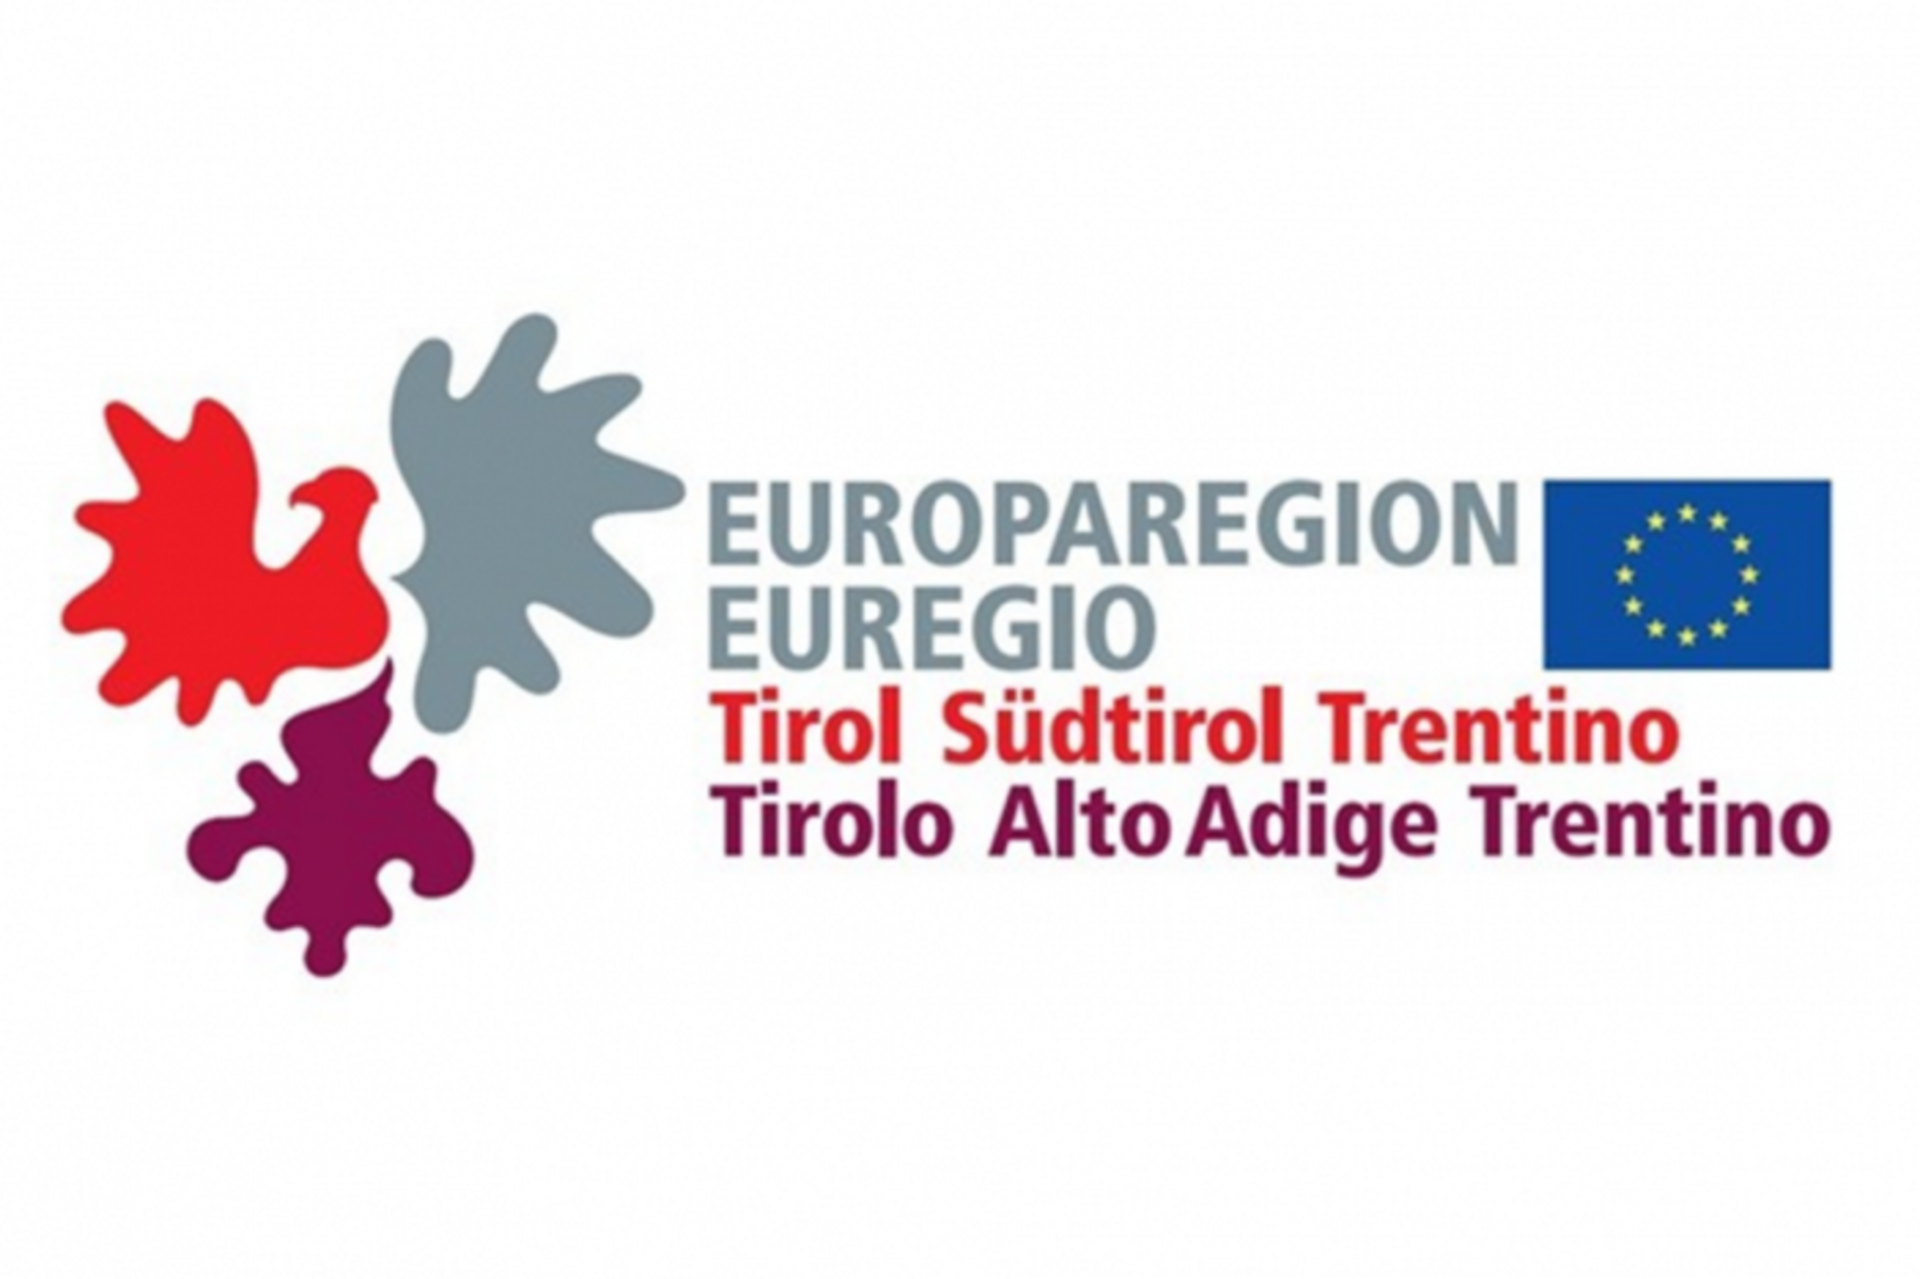 Registrierung des EVTZ “Europaregion Tirol-Südtirol-Trentino” als 21. EVTZ in Europa im europäischen Register der EVTZ am 13. September 2011